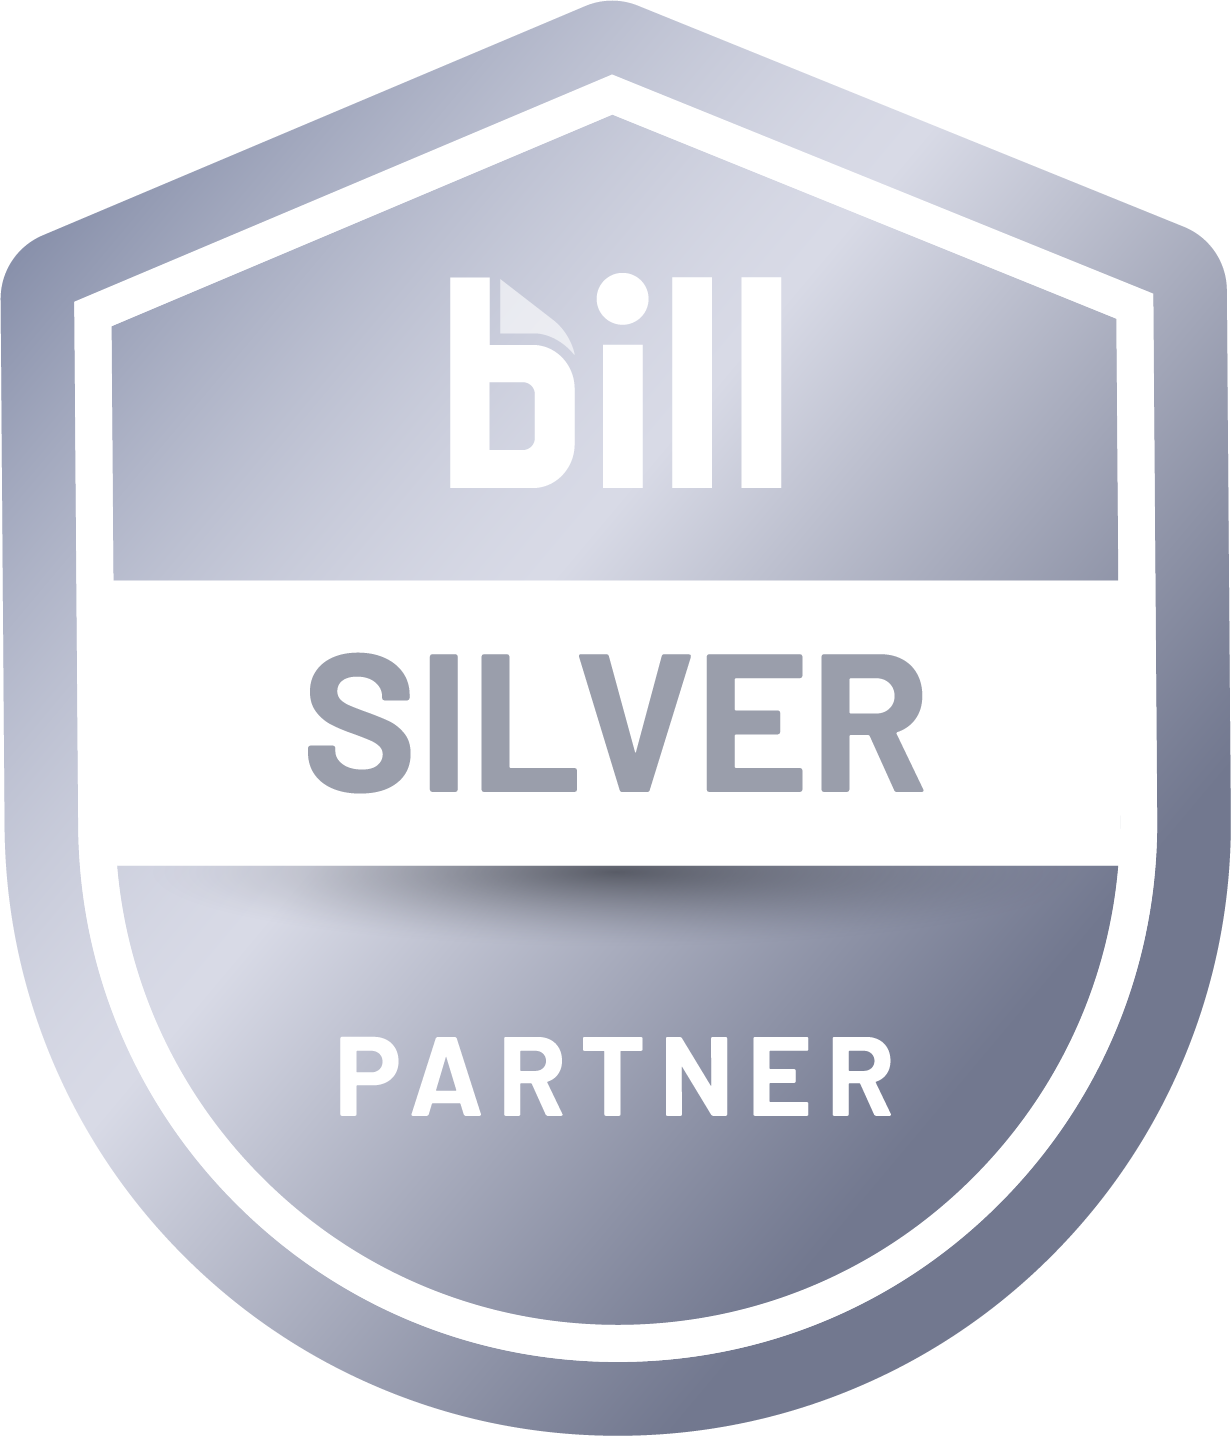 BILL Accountant Partner Program - Silver Partner